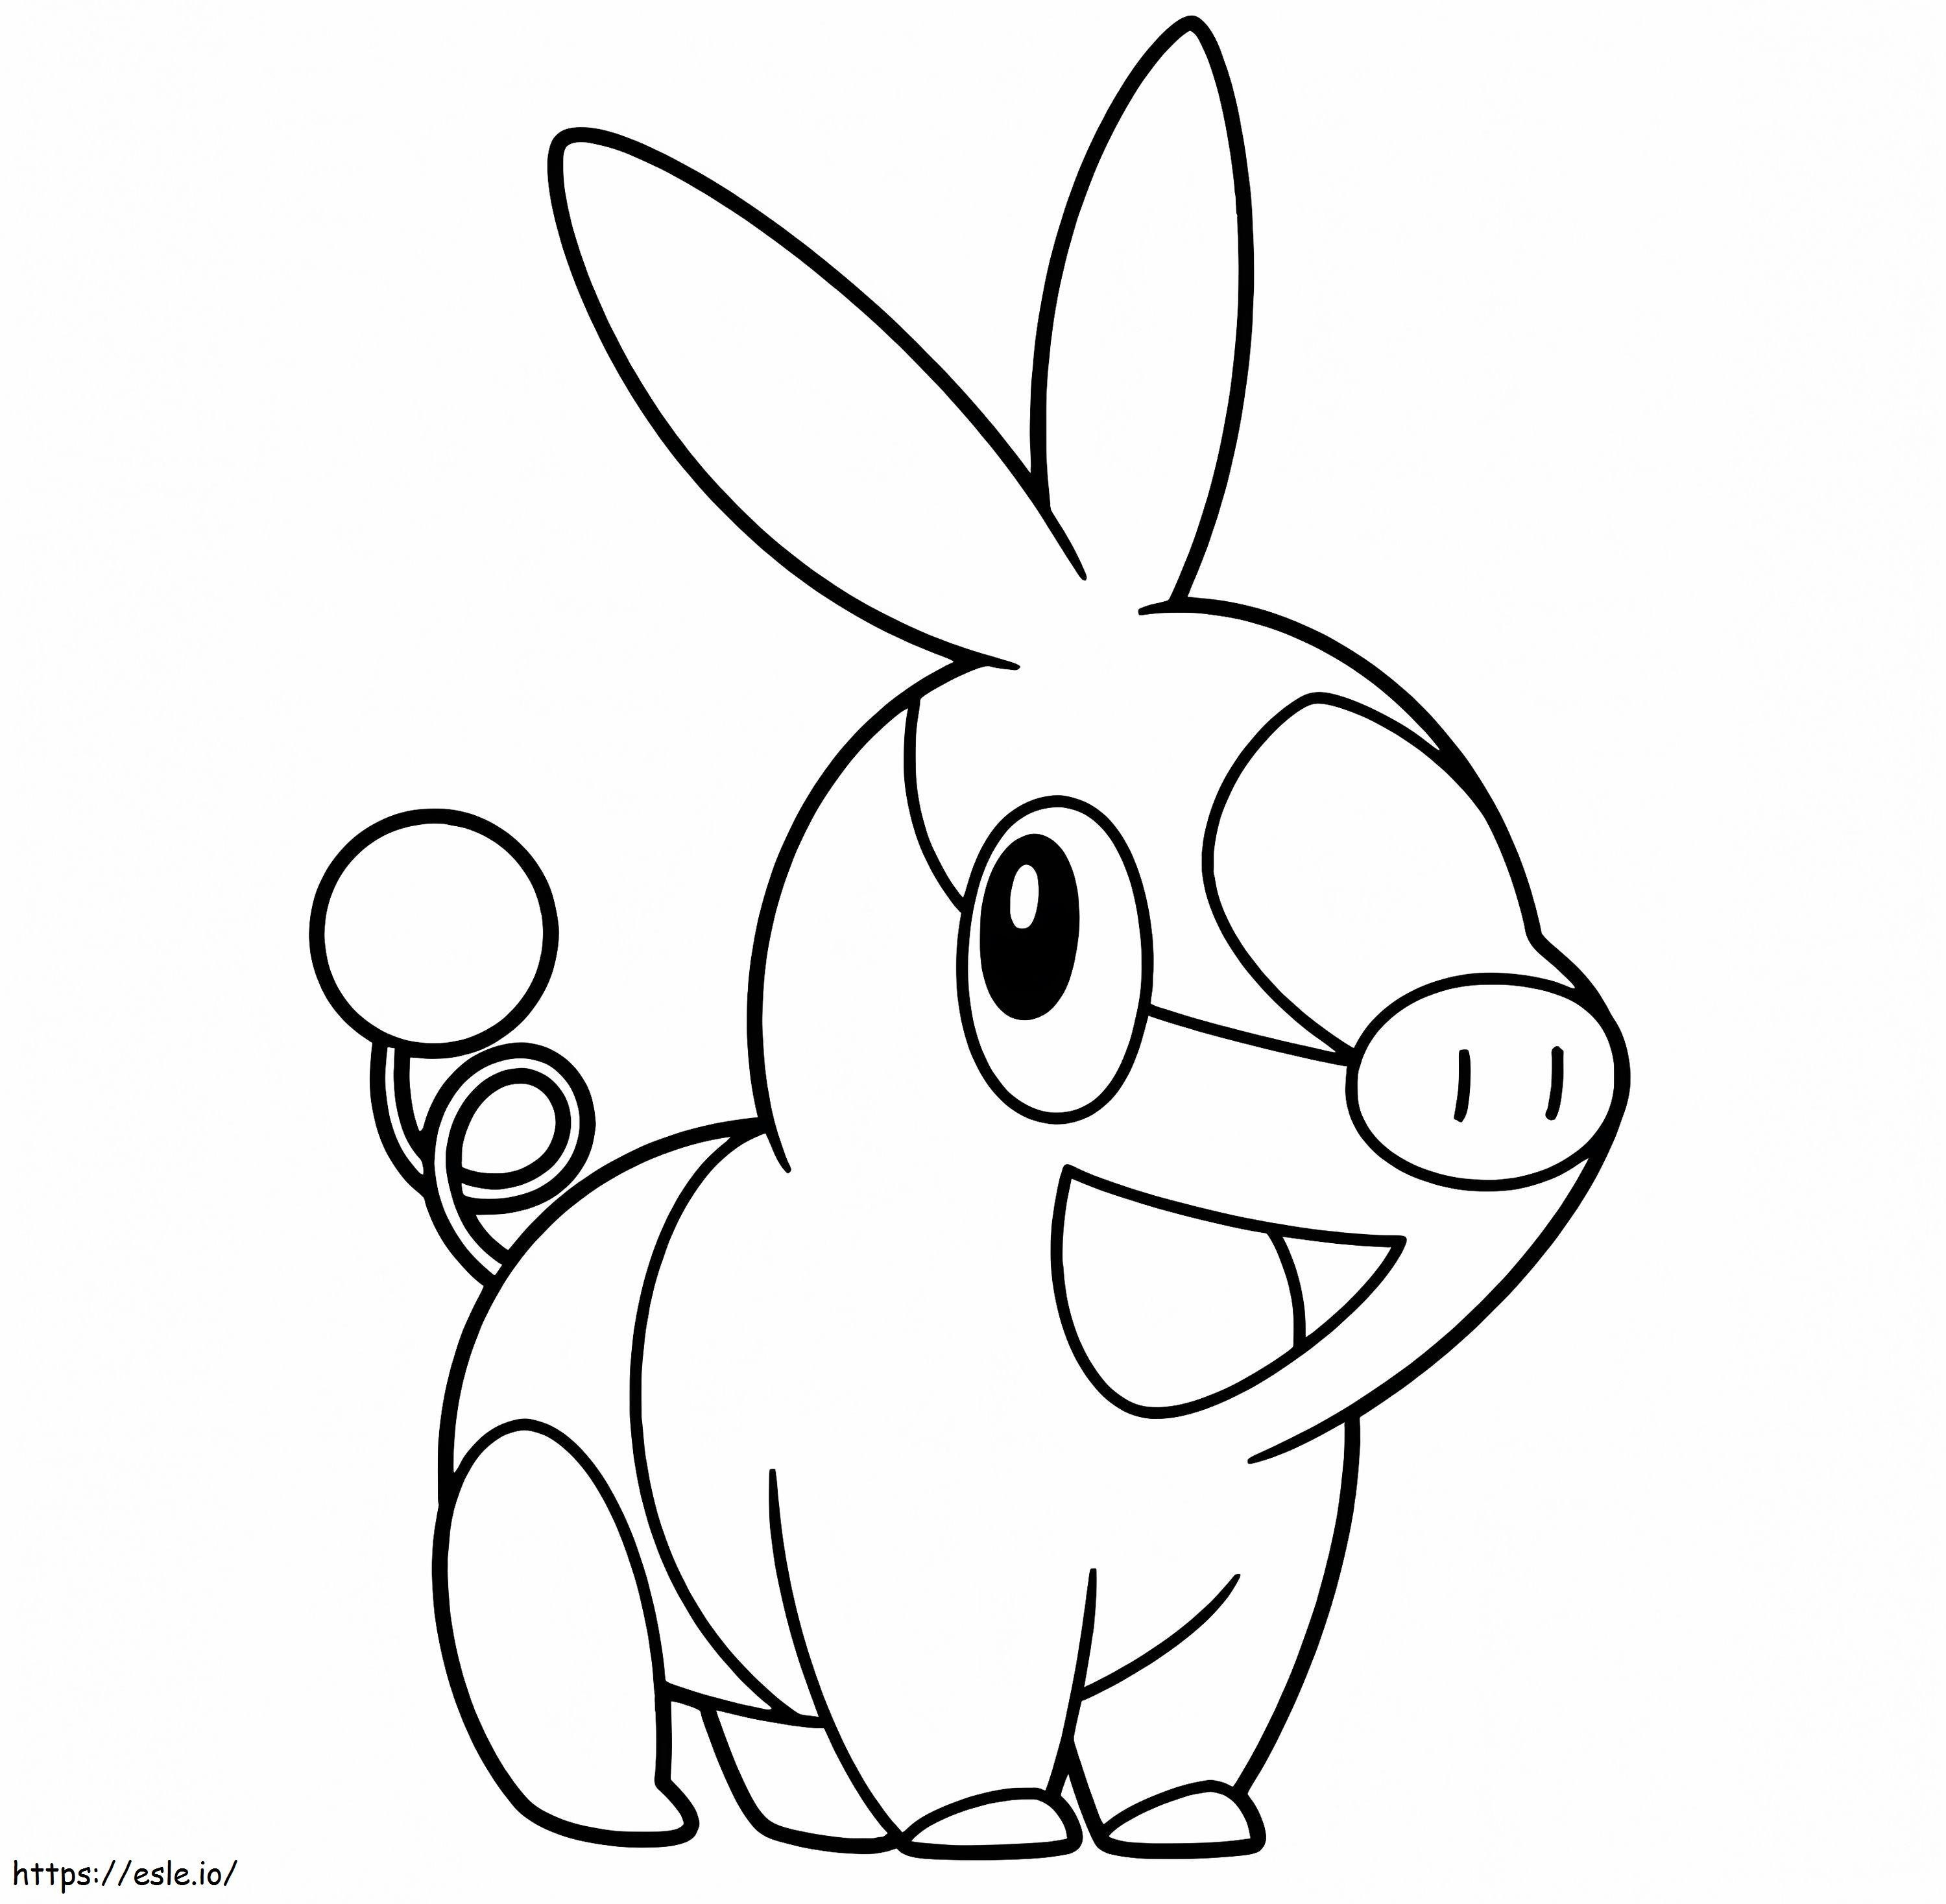 Coloriage Pokémon Tepig 4 à imprimer dessin